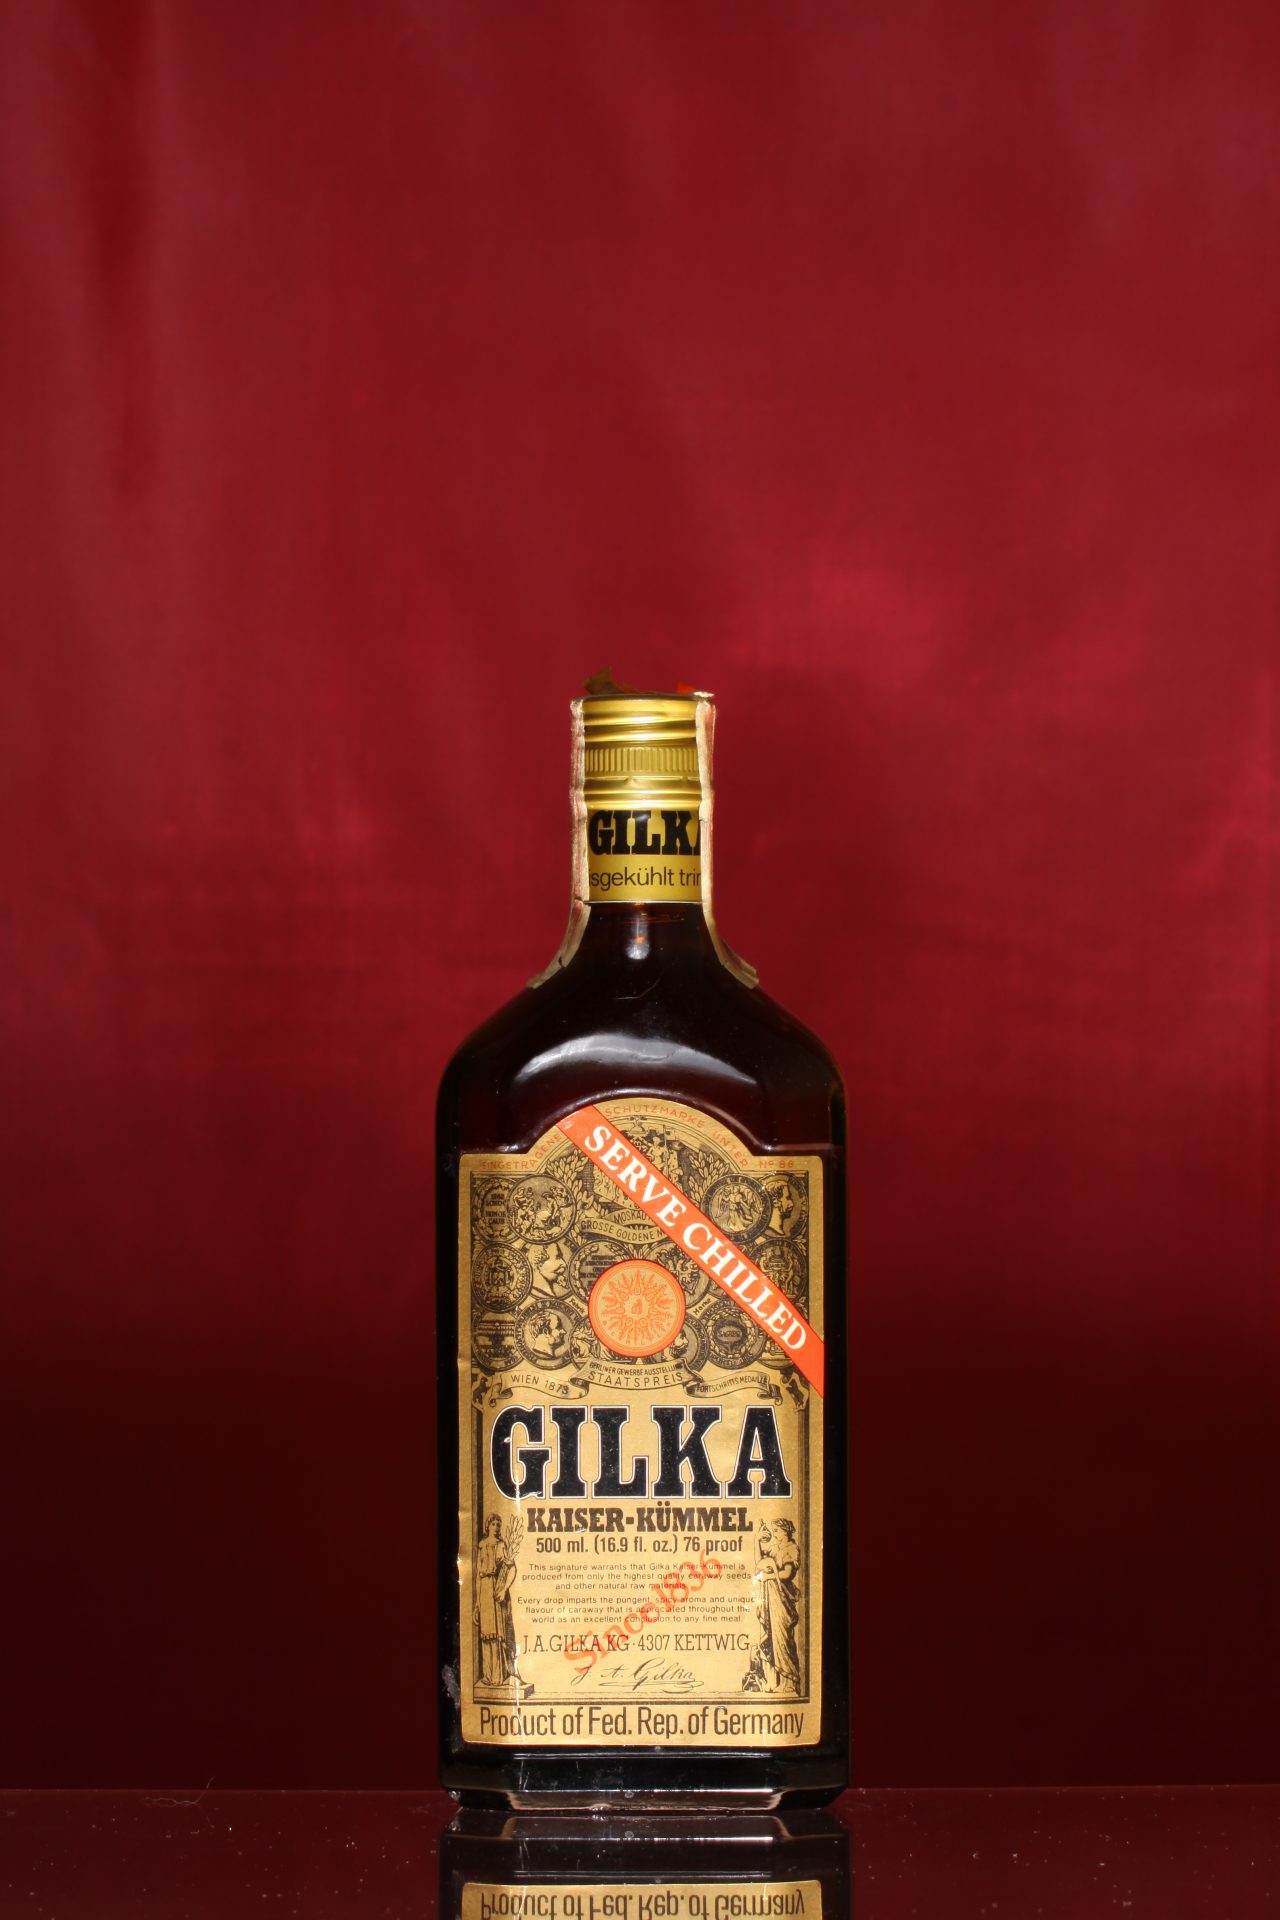 J.A. GILKA KÜMMEL – The Liquor Collection